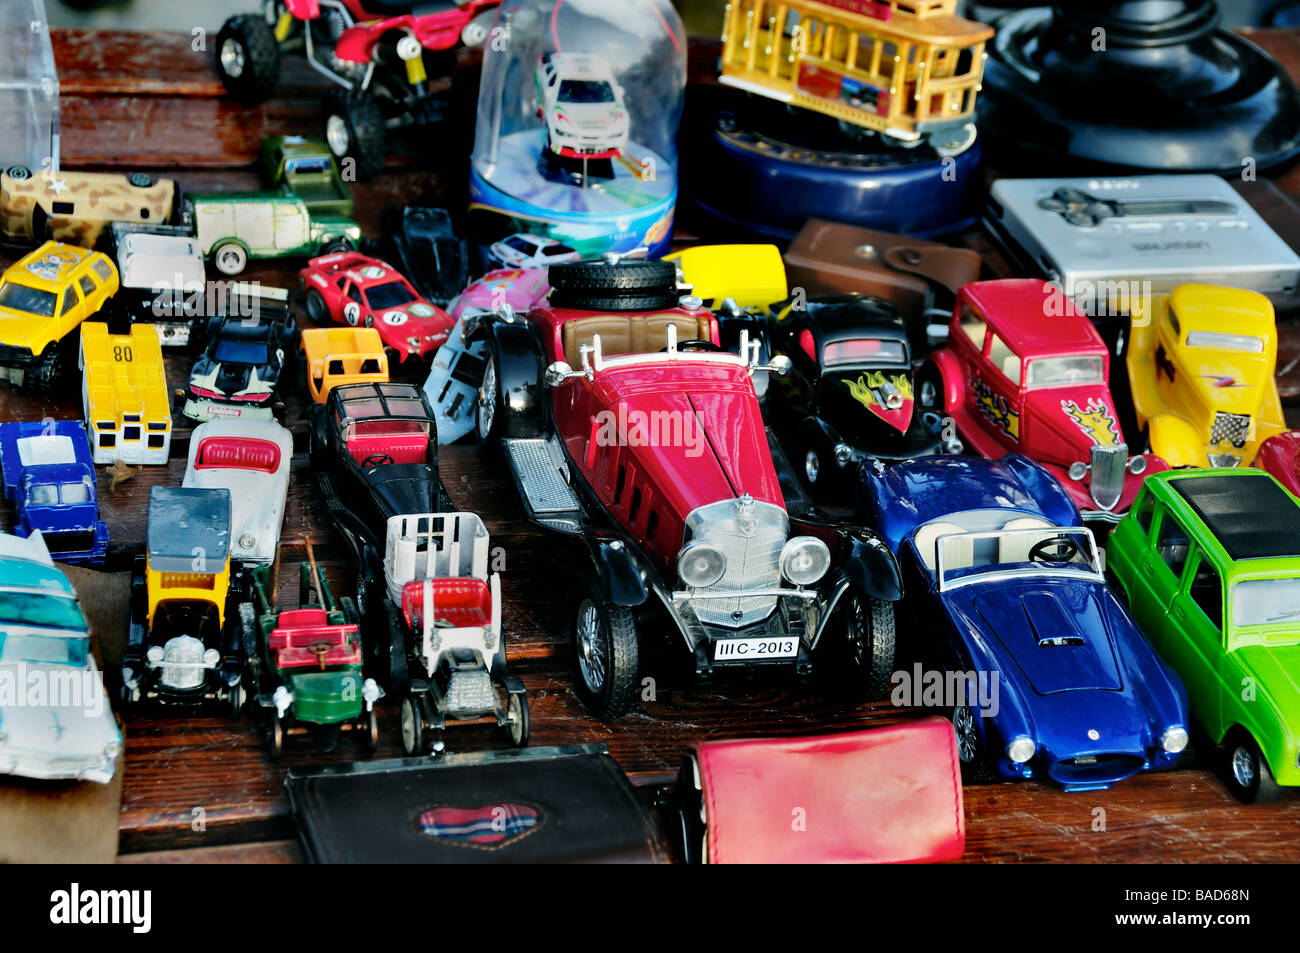 Paris France, voitures, jouets, Shopping, extérieur public 'marché aux puces' détail collection 'jouets pour enfants' exposé, objet en métal Banque D'Images